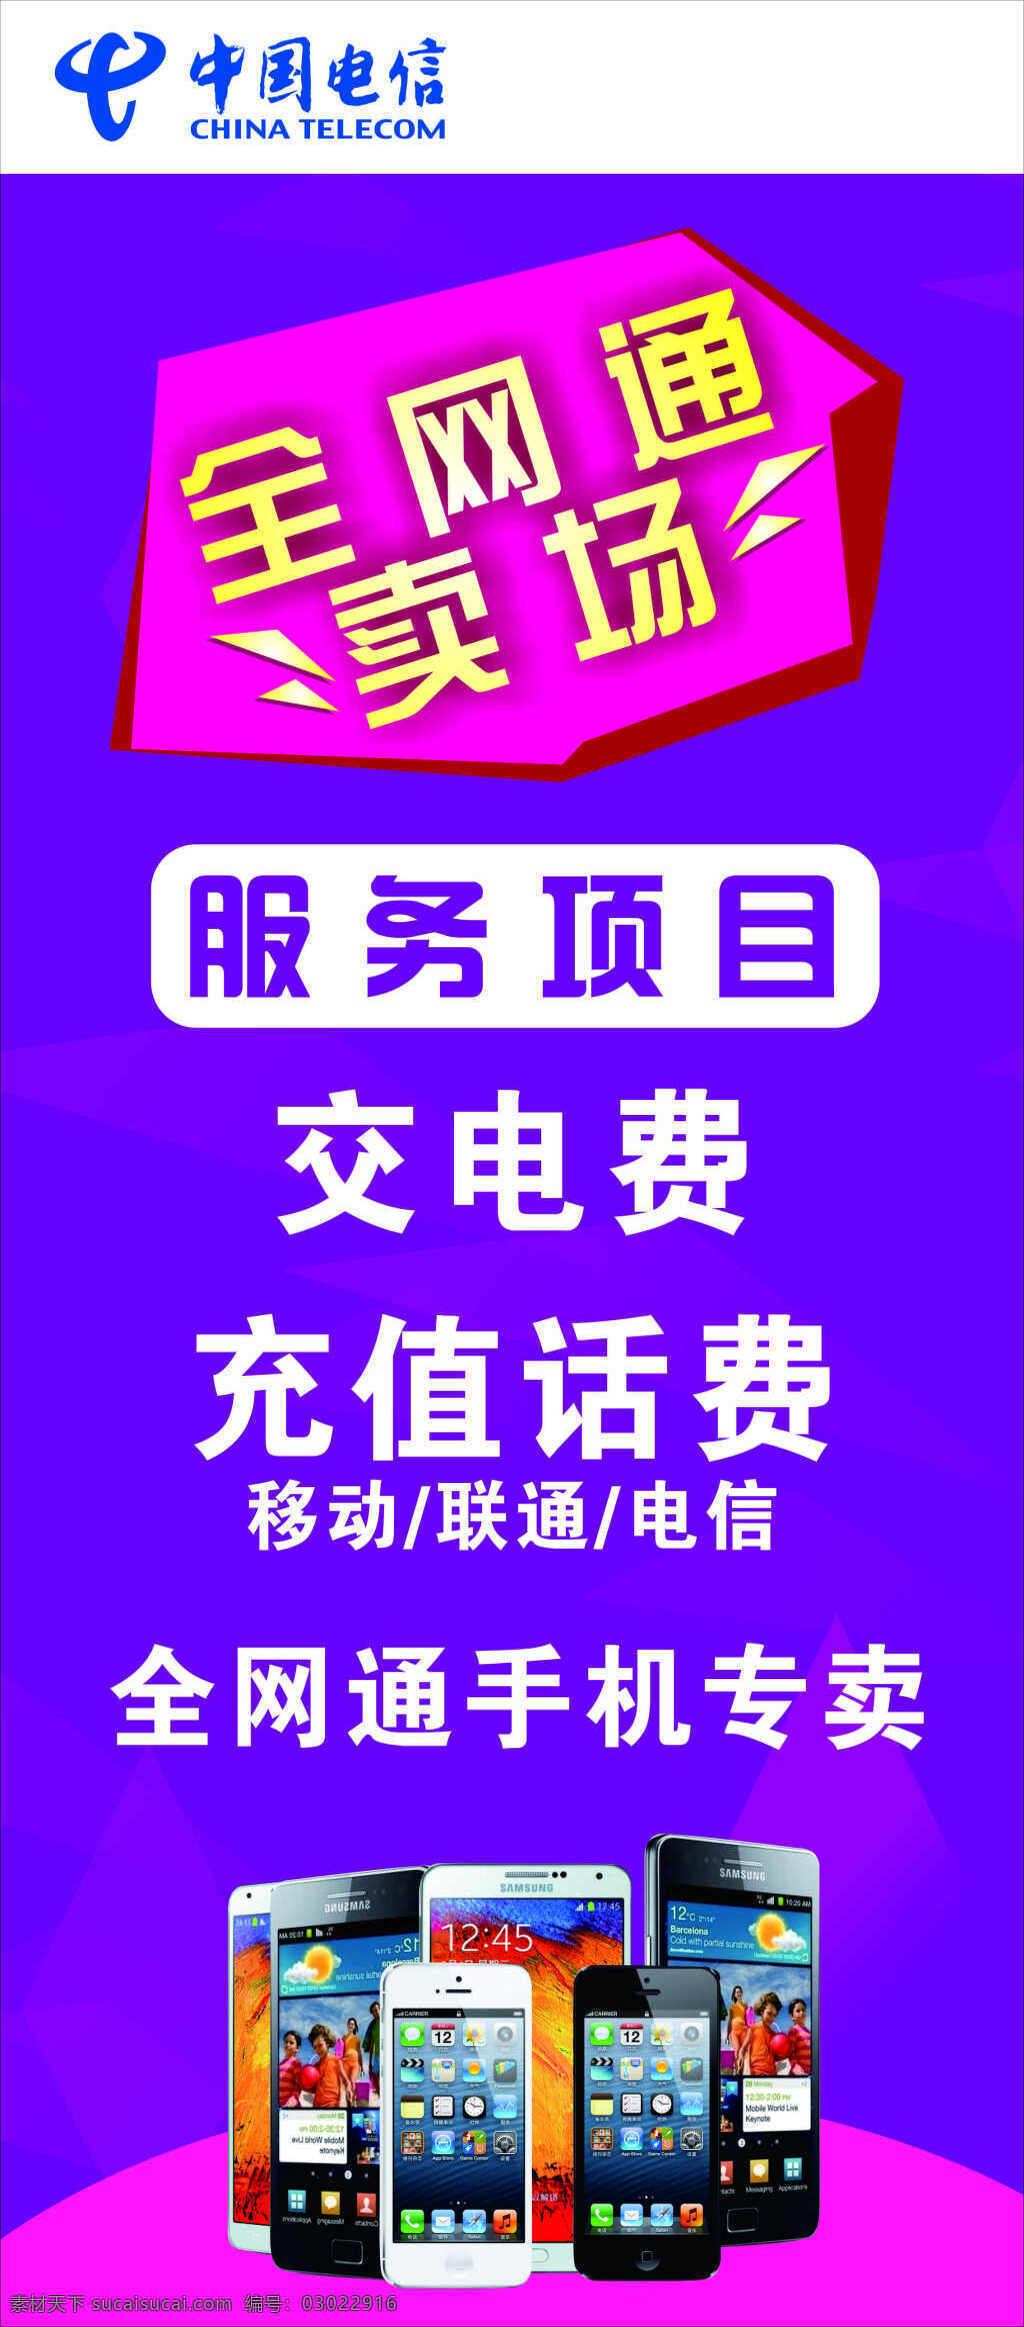 全网通展架 全网通 卖场 中国电信 服务项目 充值话费 手机专卖 蓝紫色背景 手机 蓝色